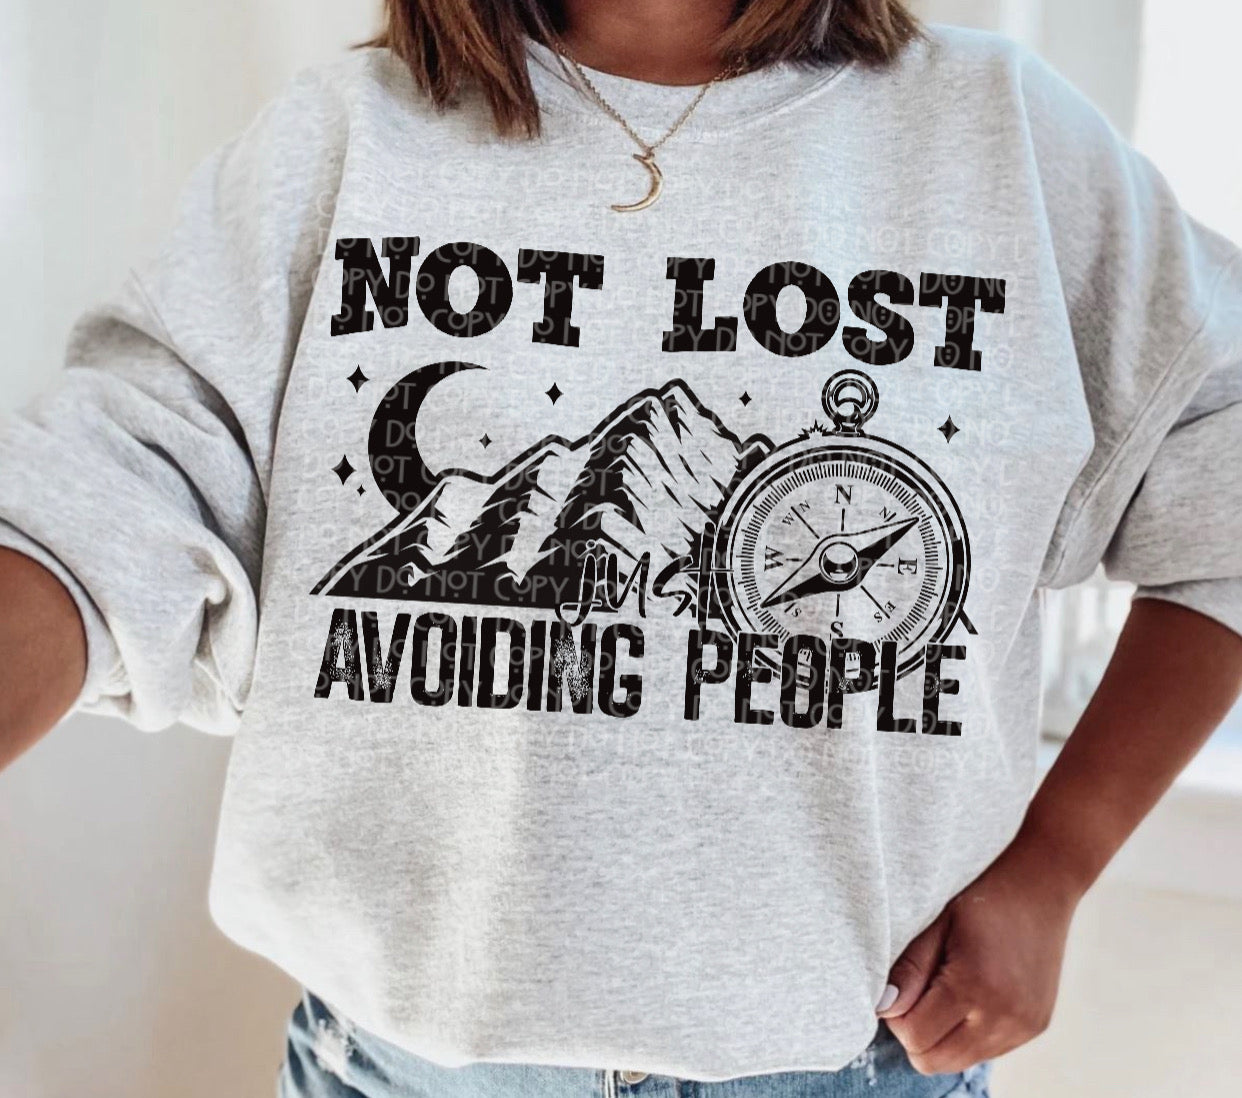 avoiding people